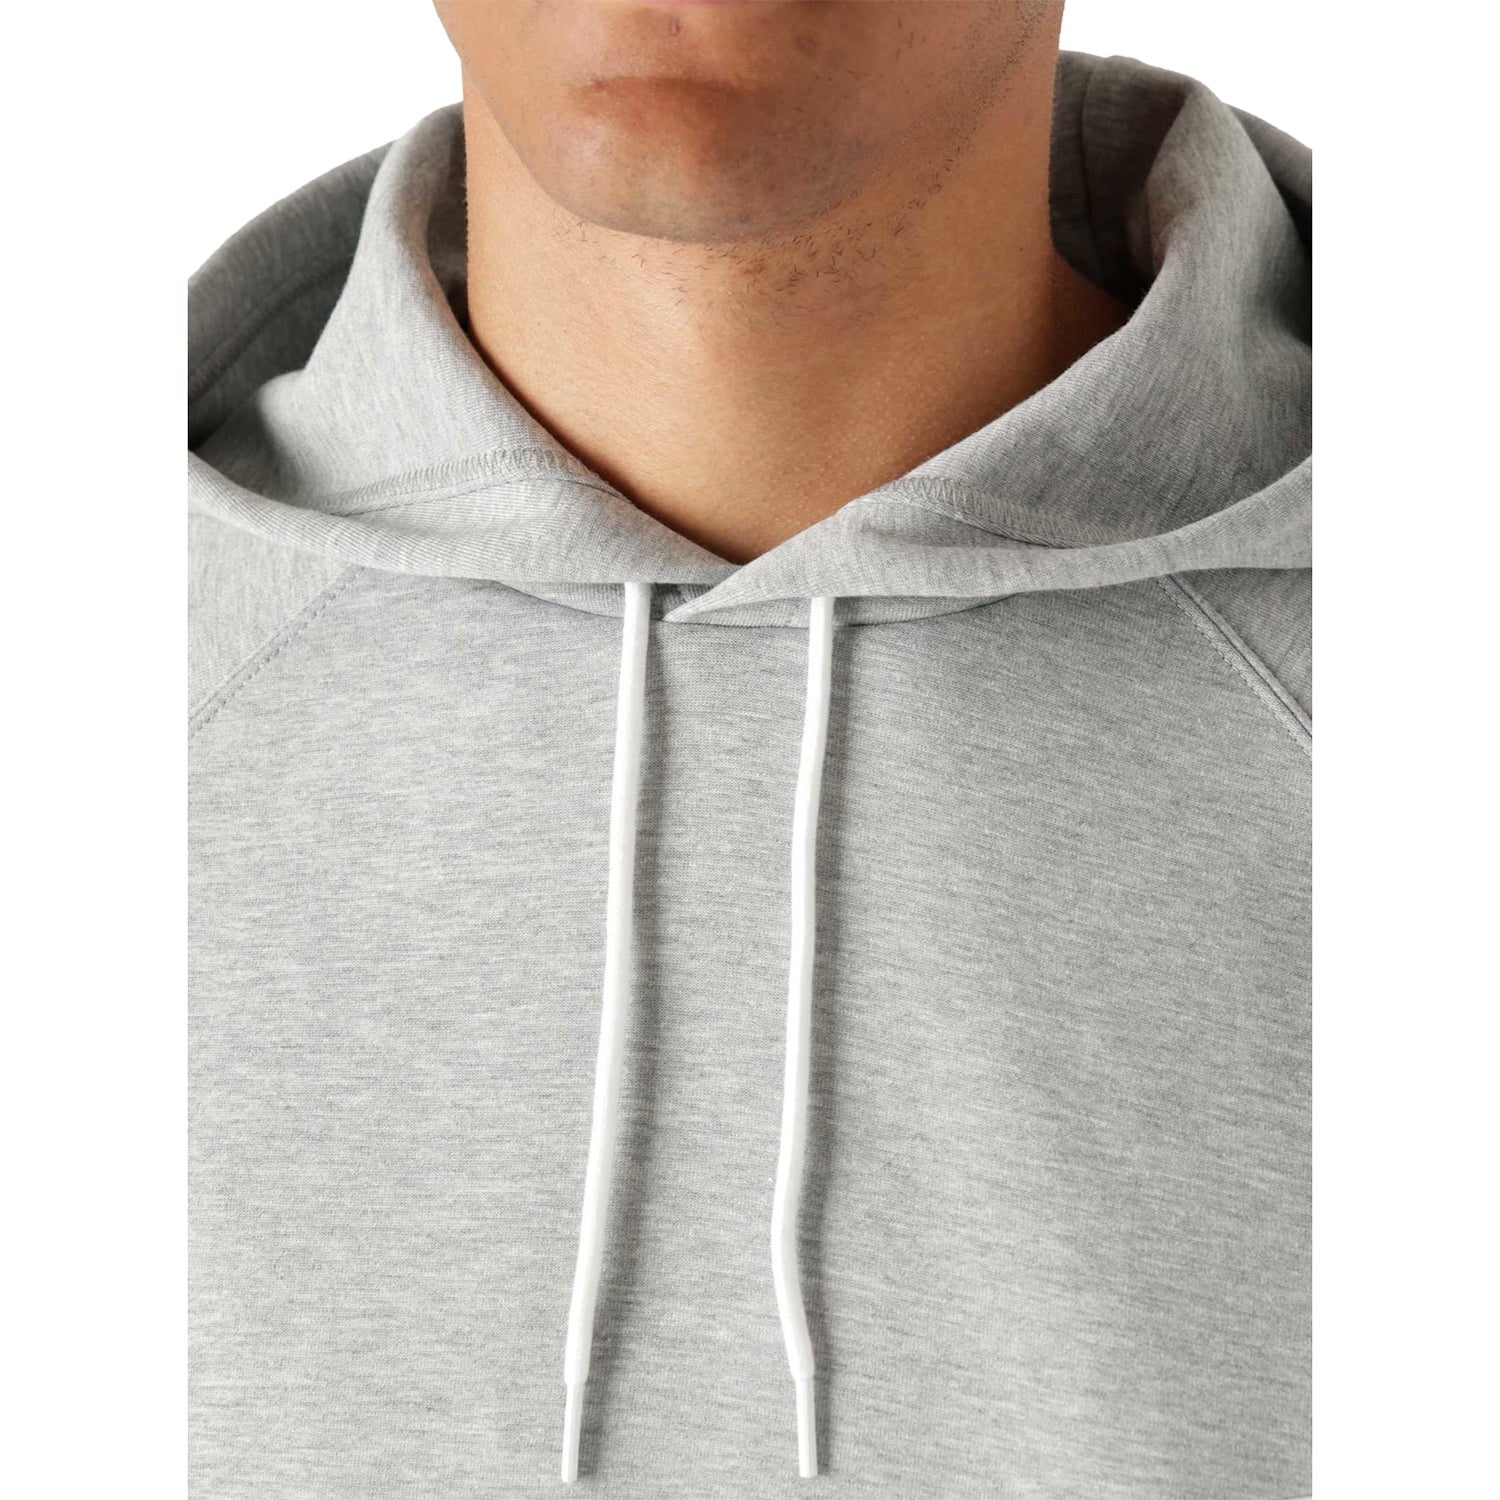 Nike Sportswear Smiley Fleece Sweatshirt Womens Style : Dq3543